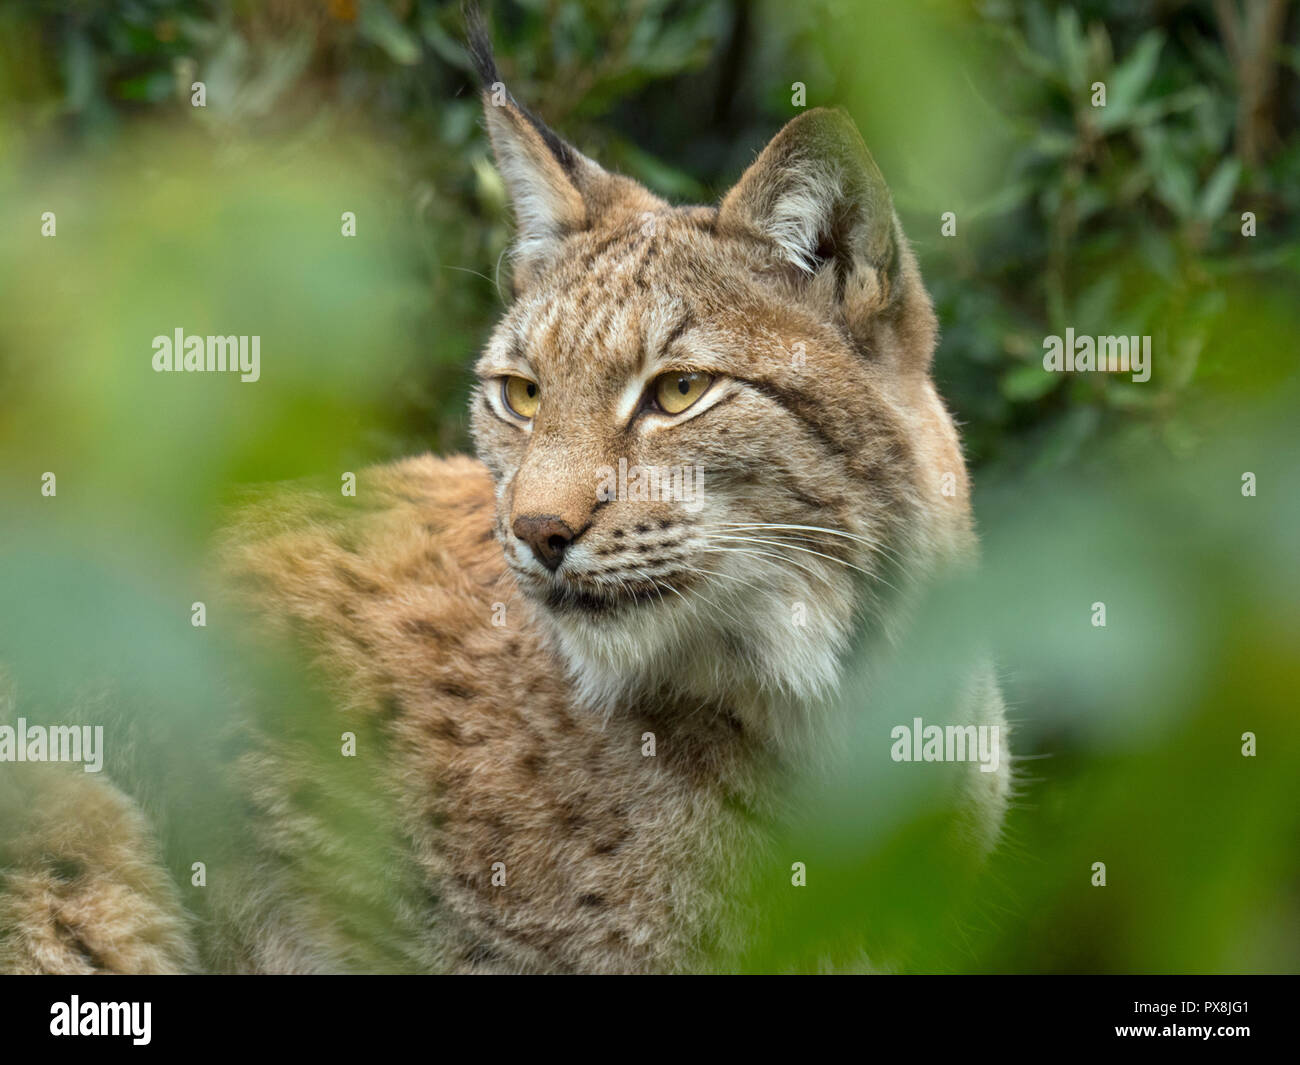 Eurasian lynx (Lynx lynx) Captive photograph Stock Photo